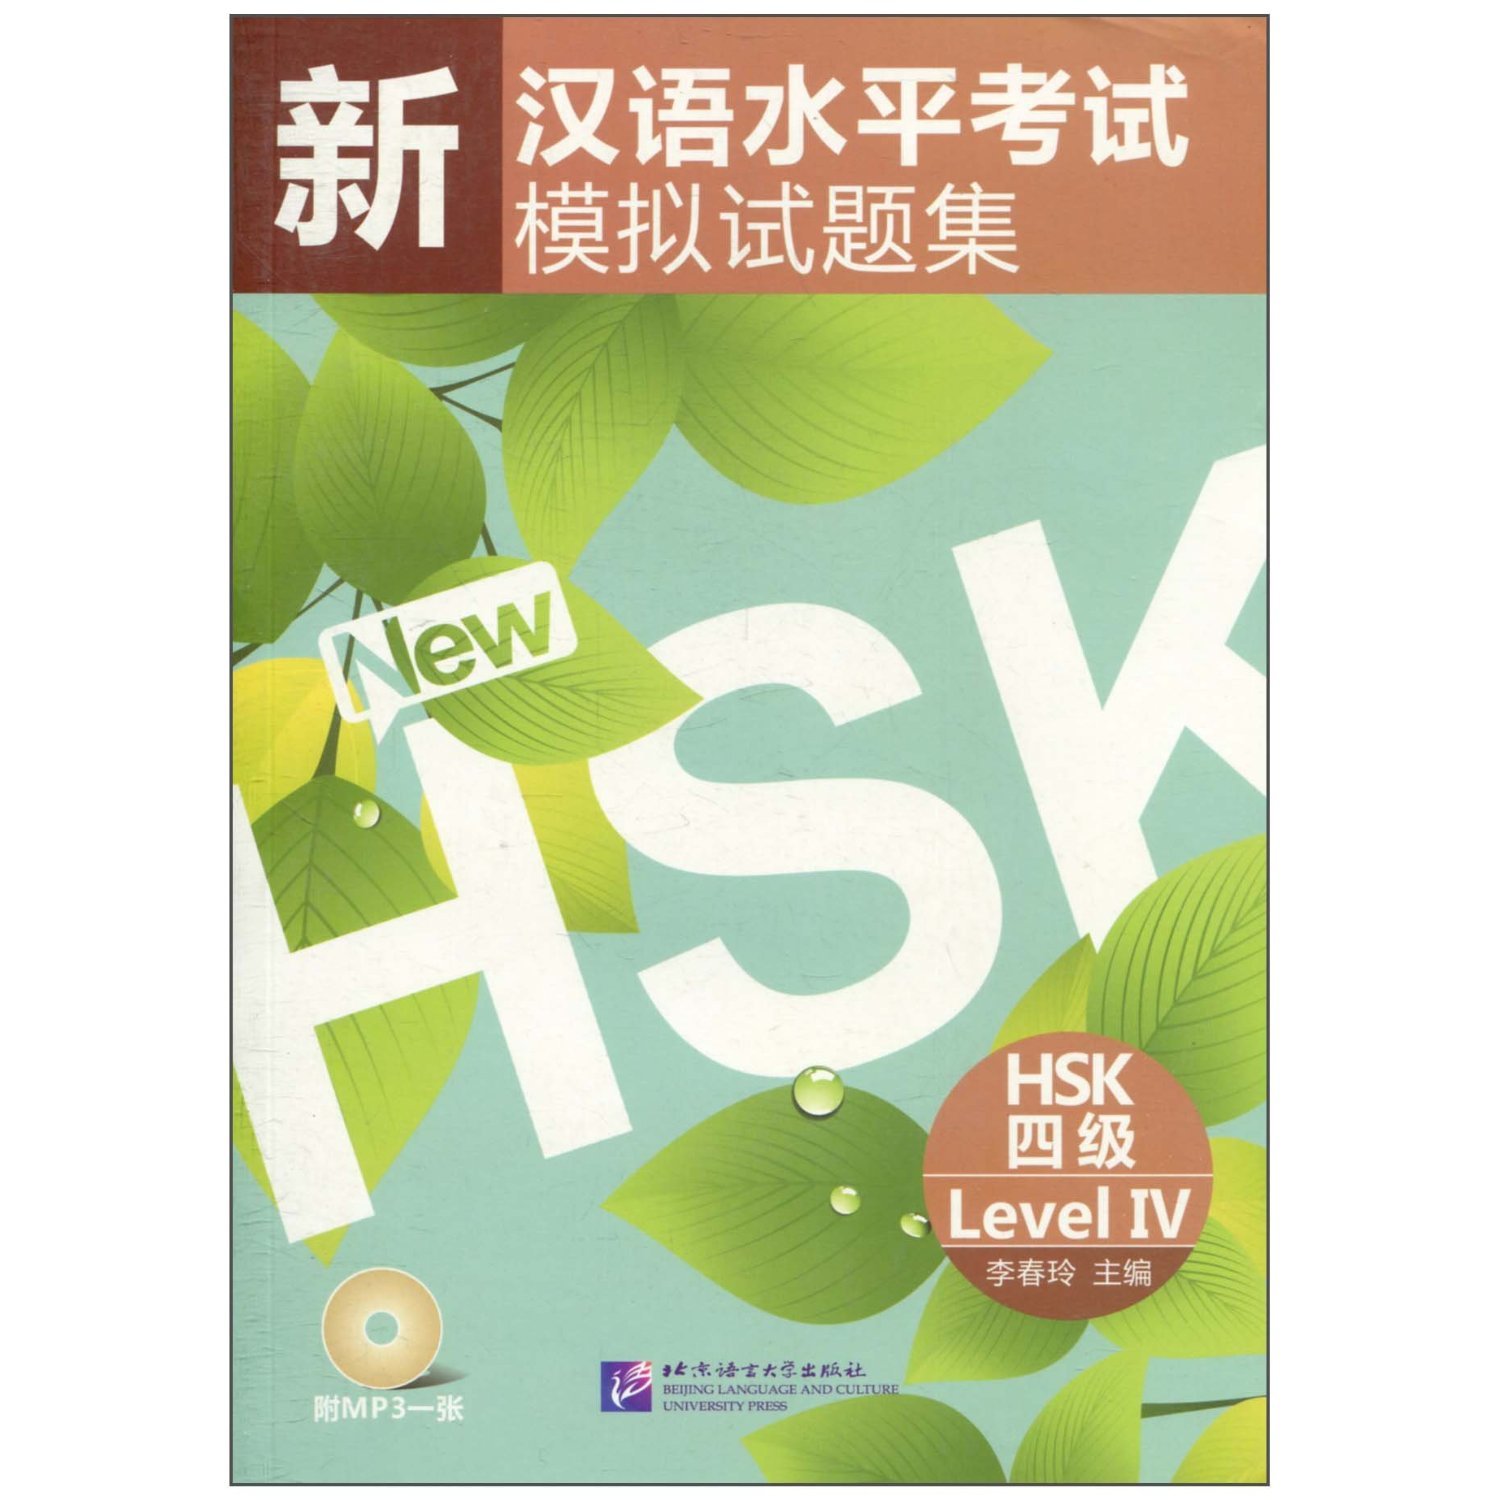 หนังสือเรียนภาษาจีนเตรียมสอบ HSK ระดับ 4 พร้อม MP3